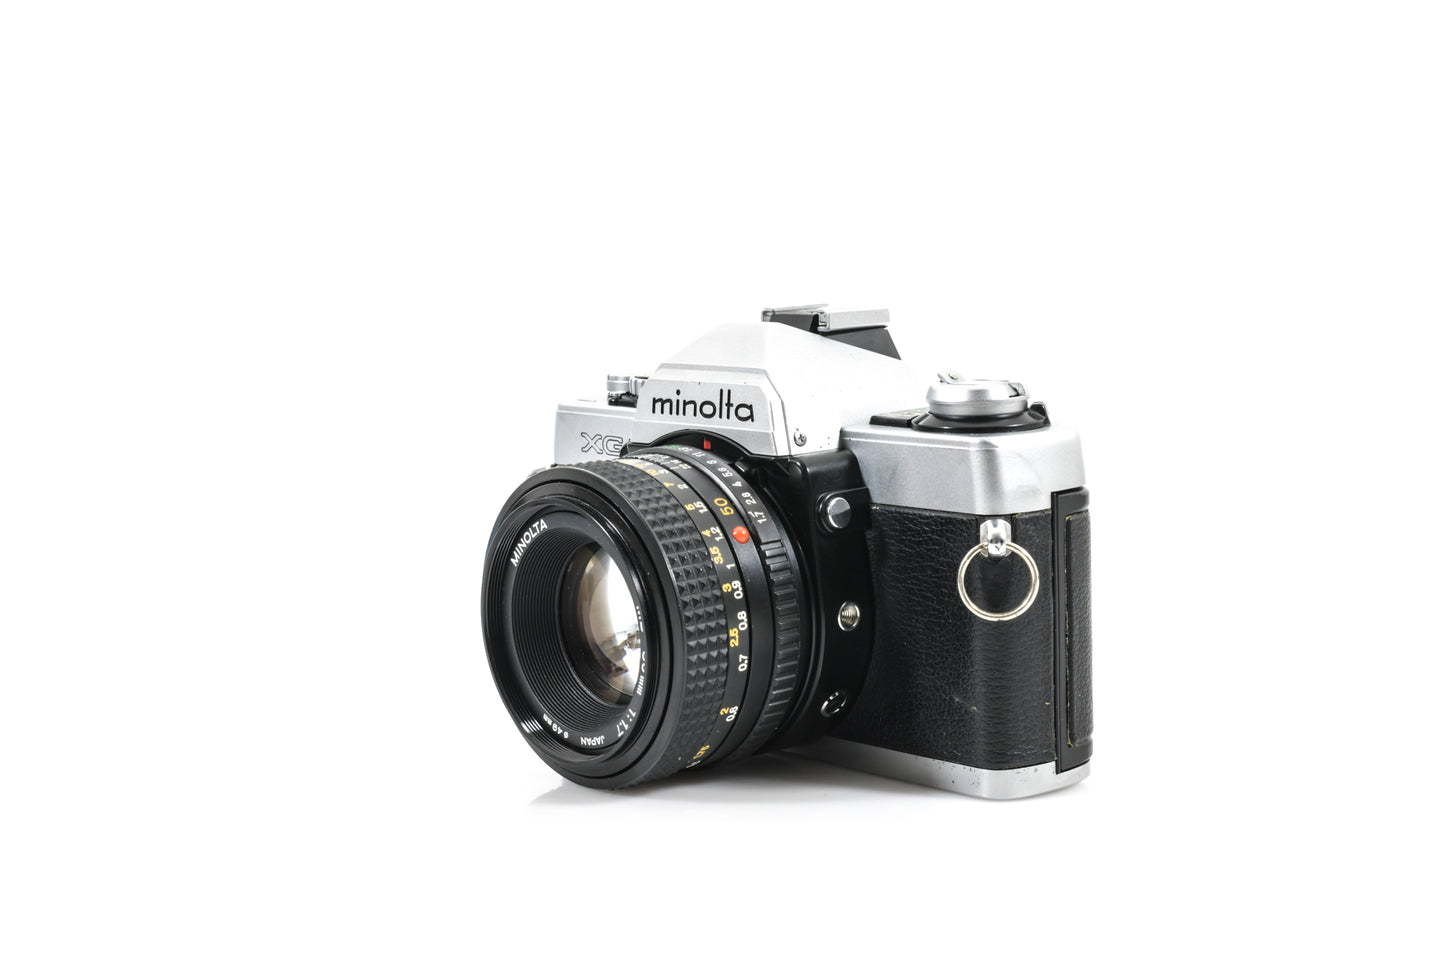 Serviced Minolta XG-1 35mm Film SLR Camera + Minolta 50mm F1.7 Lens